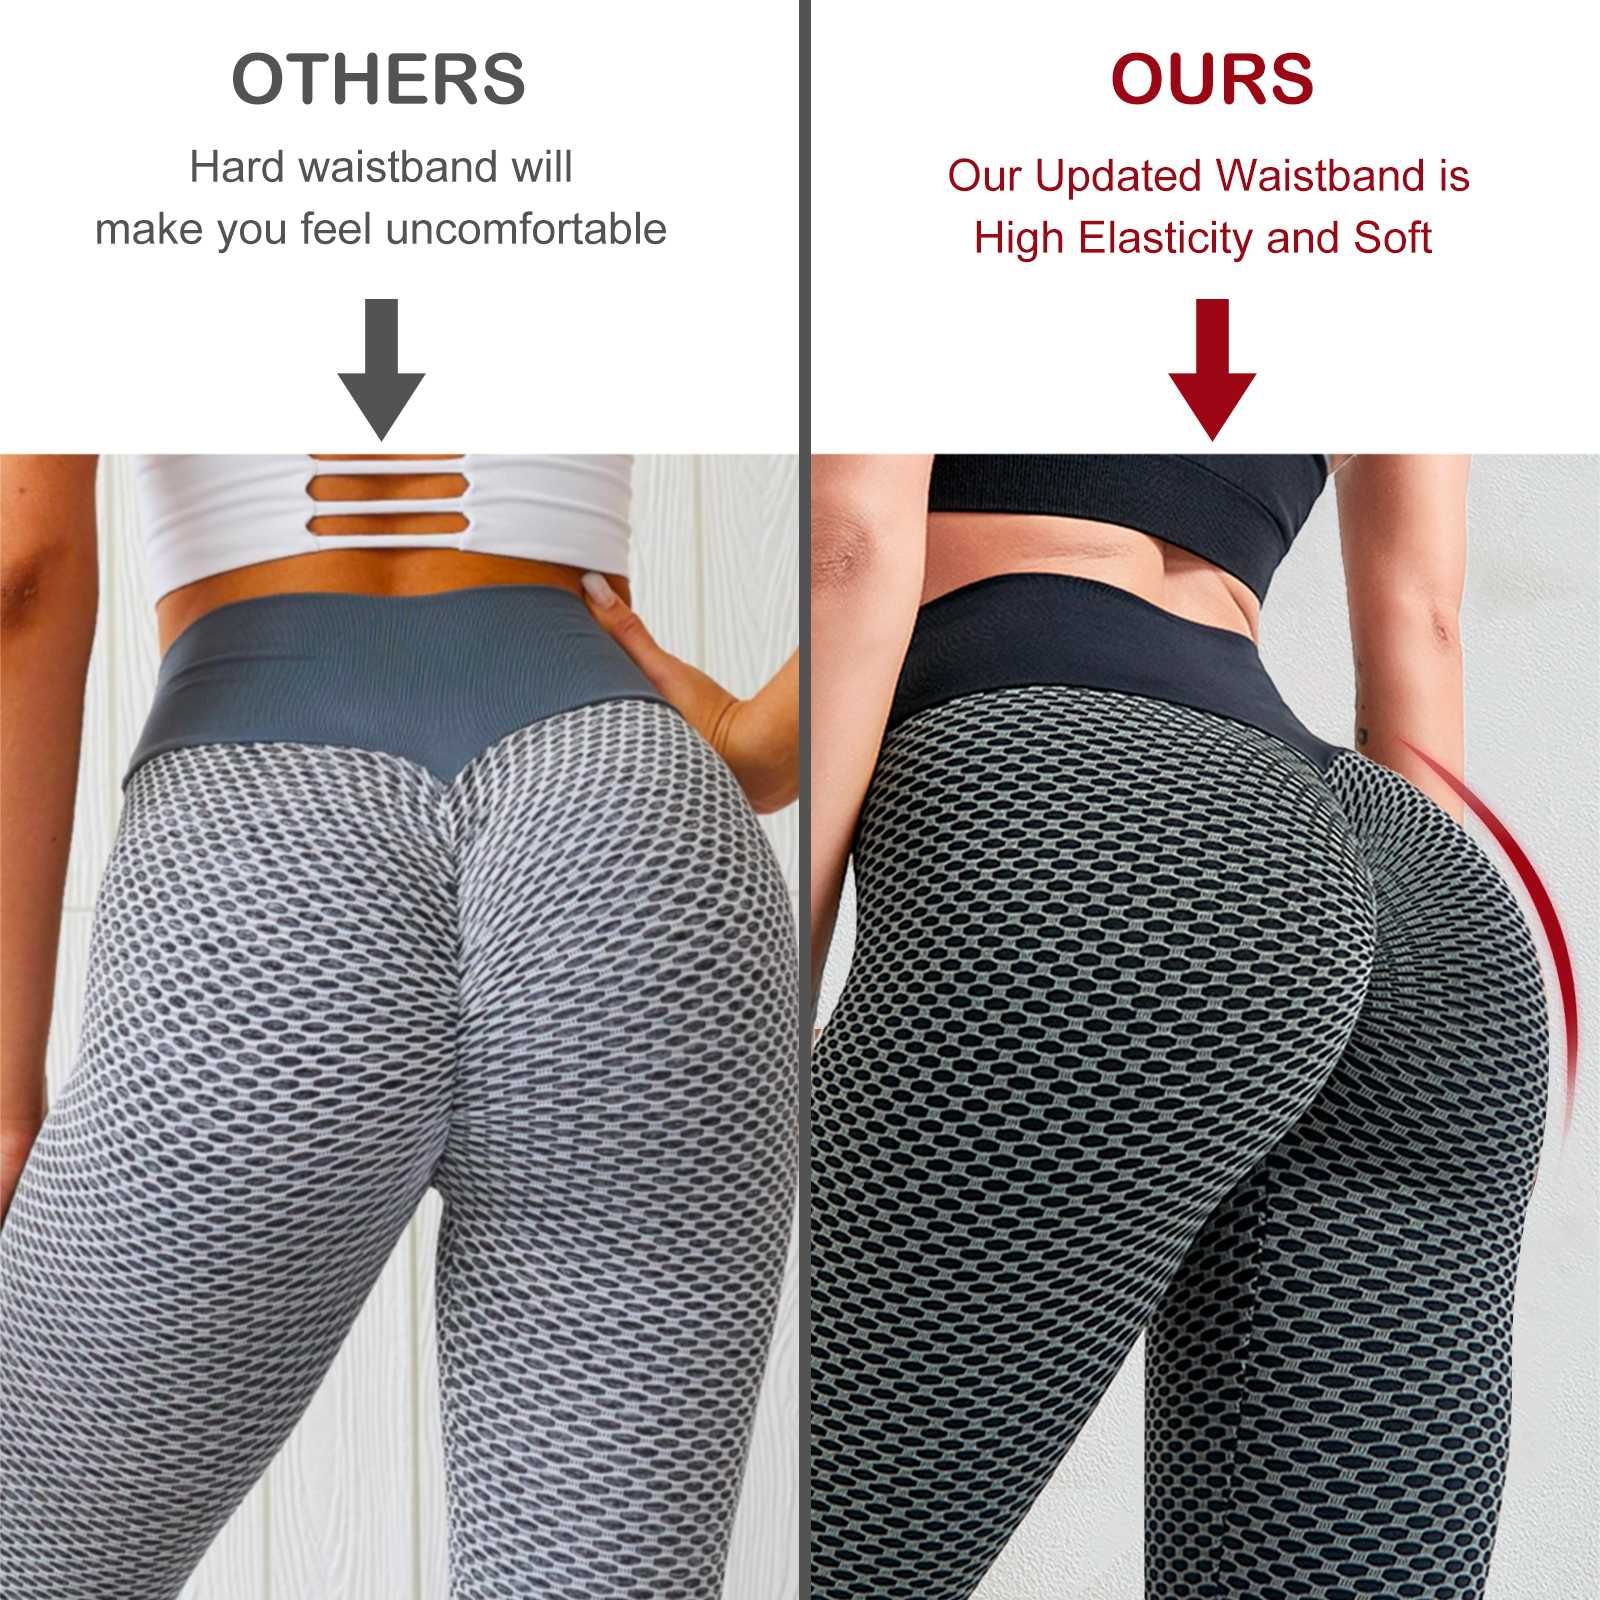 Leggings Women Butt Lifting Workout Sports High Waist Pants